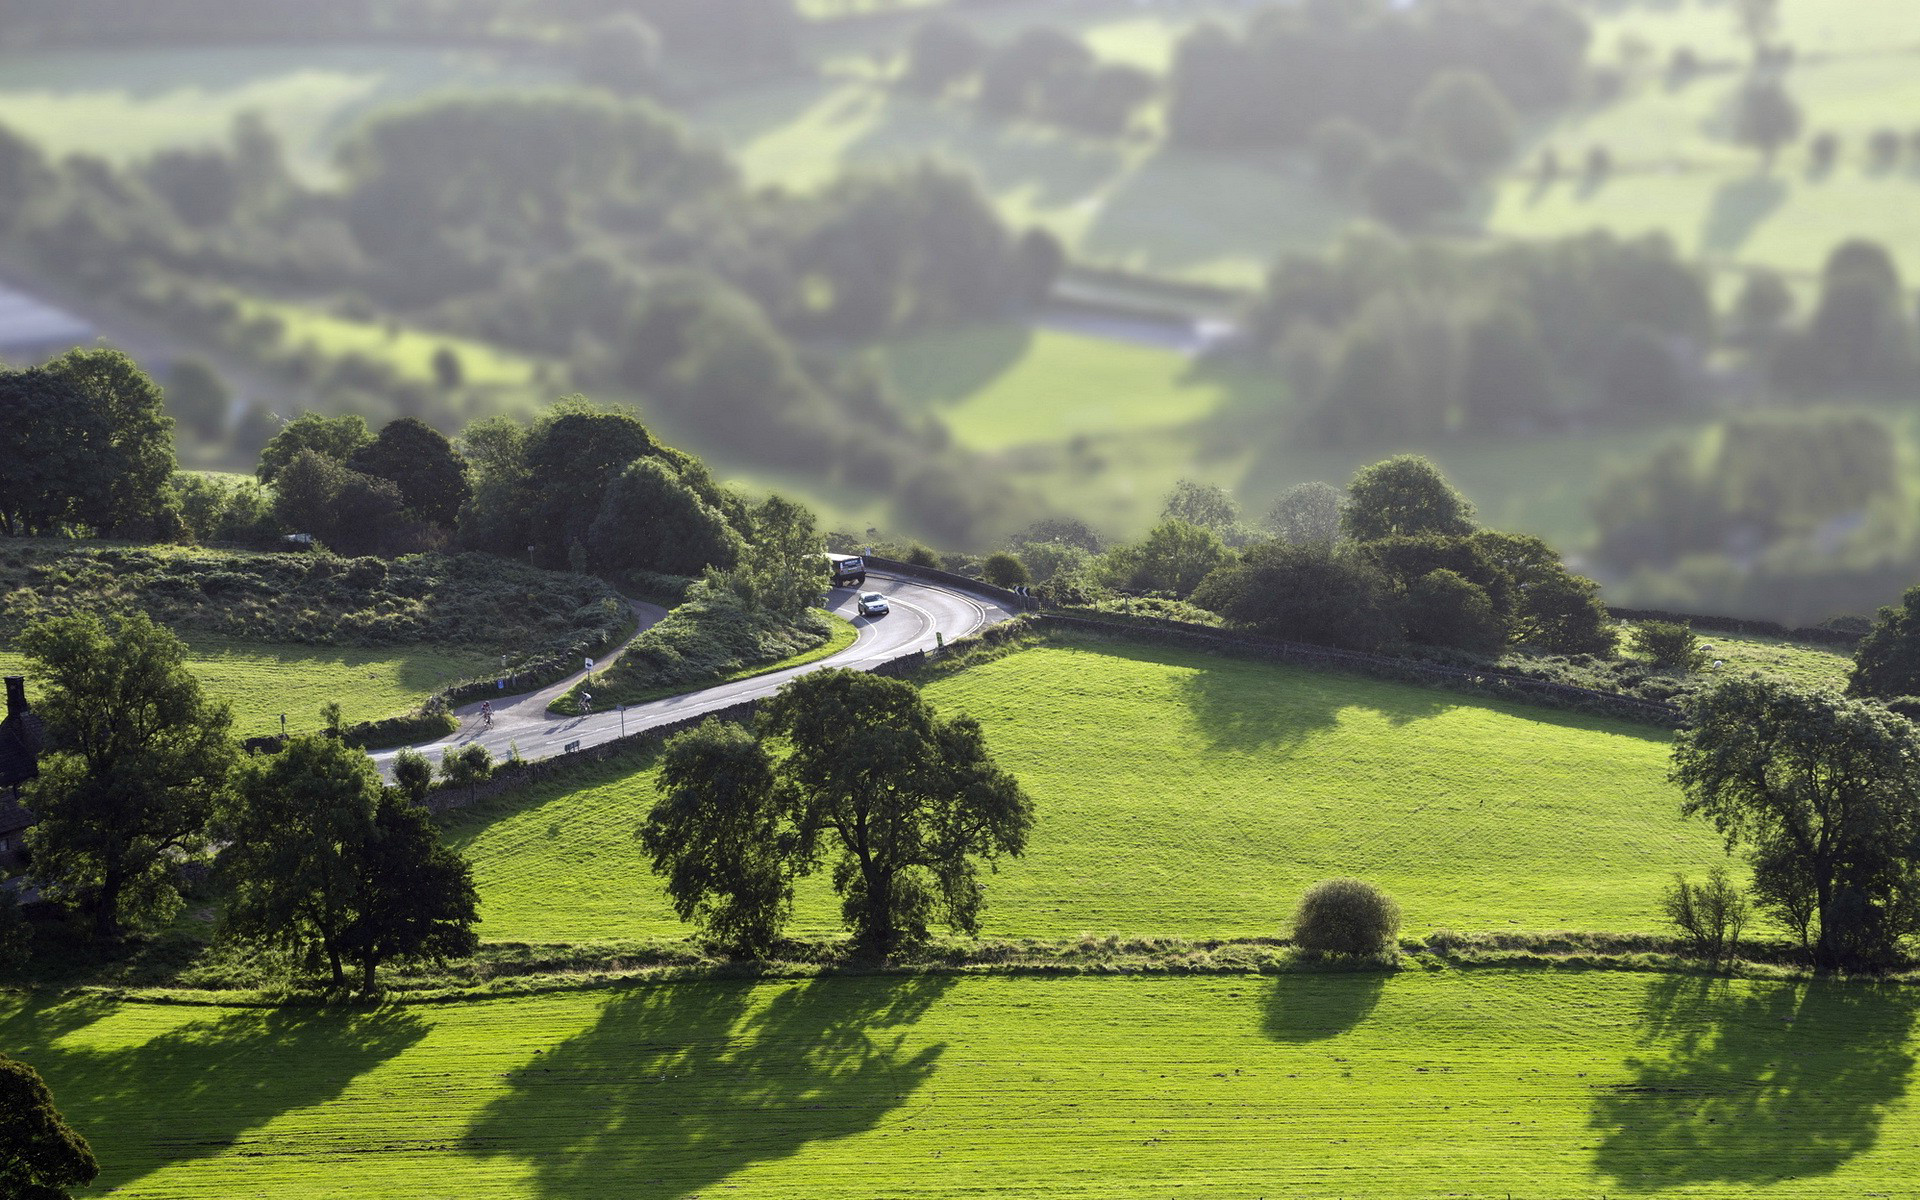 landscape, fields, roads Image for desktop